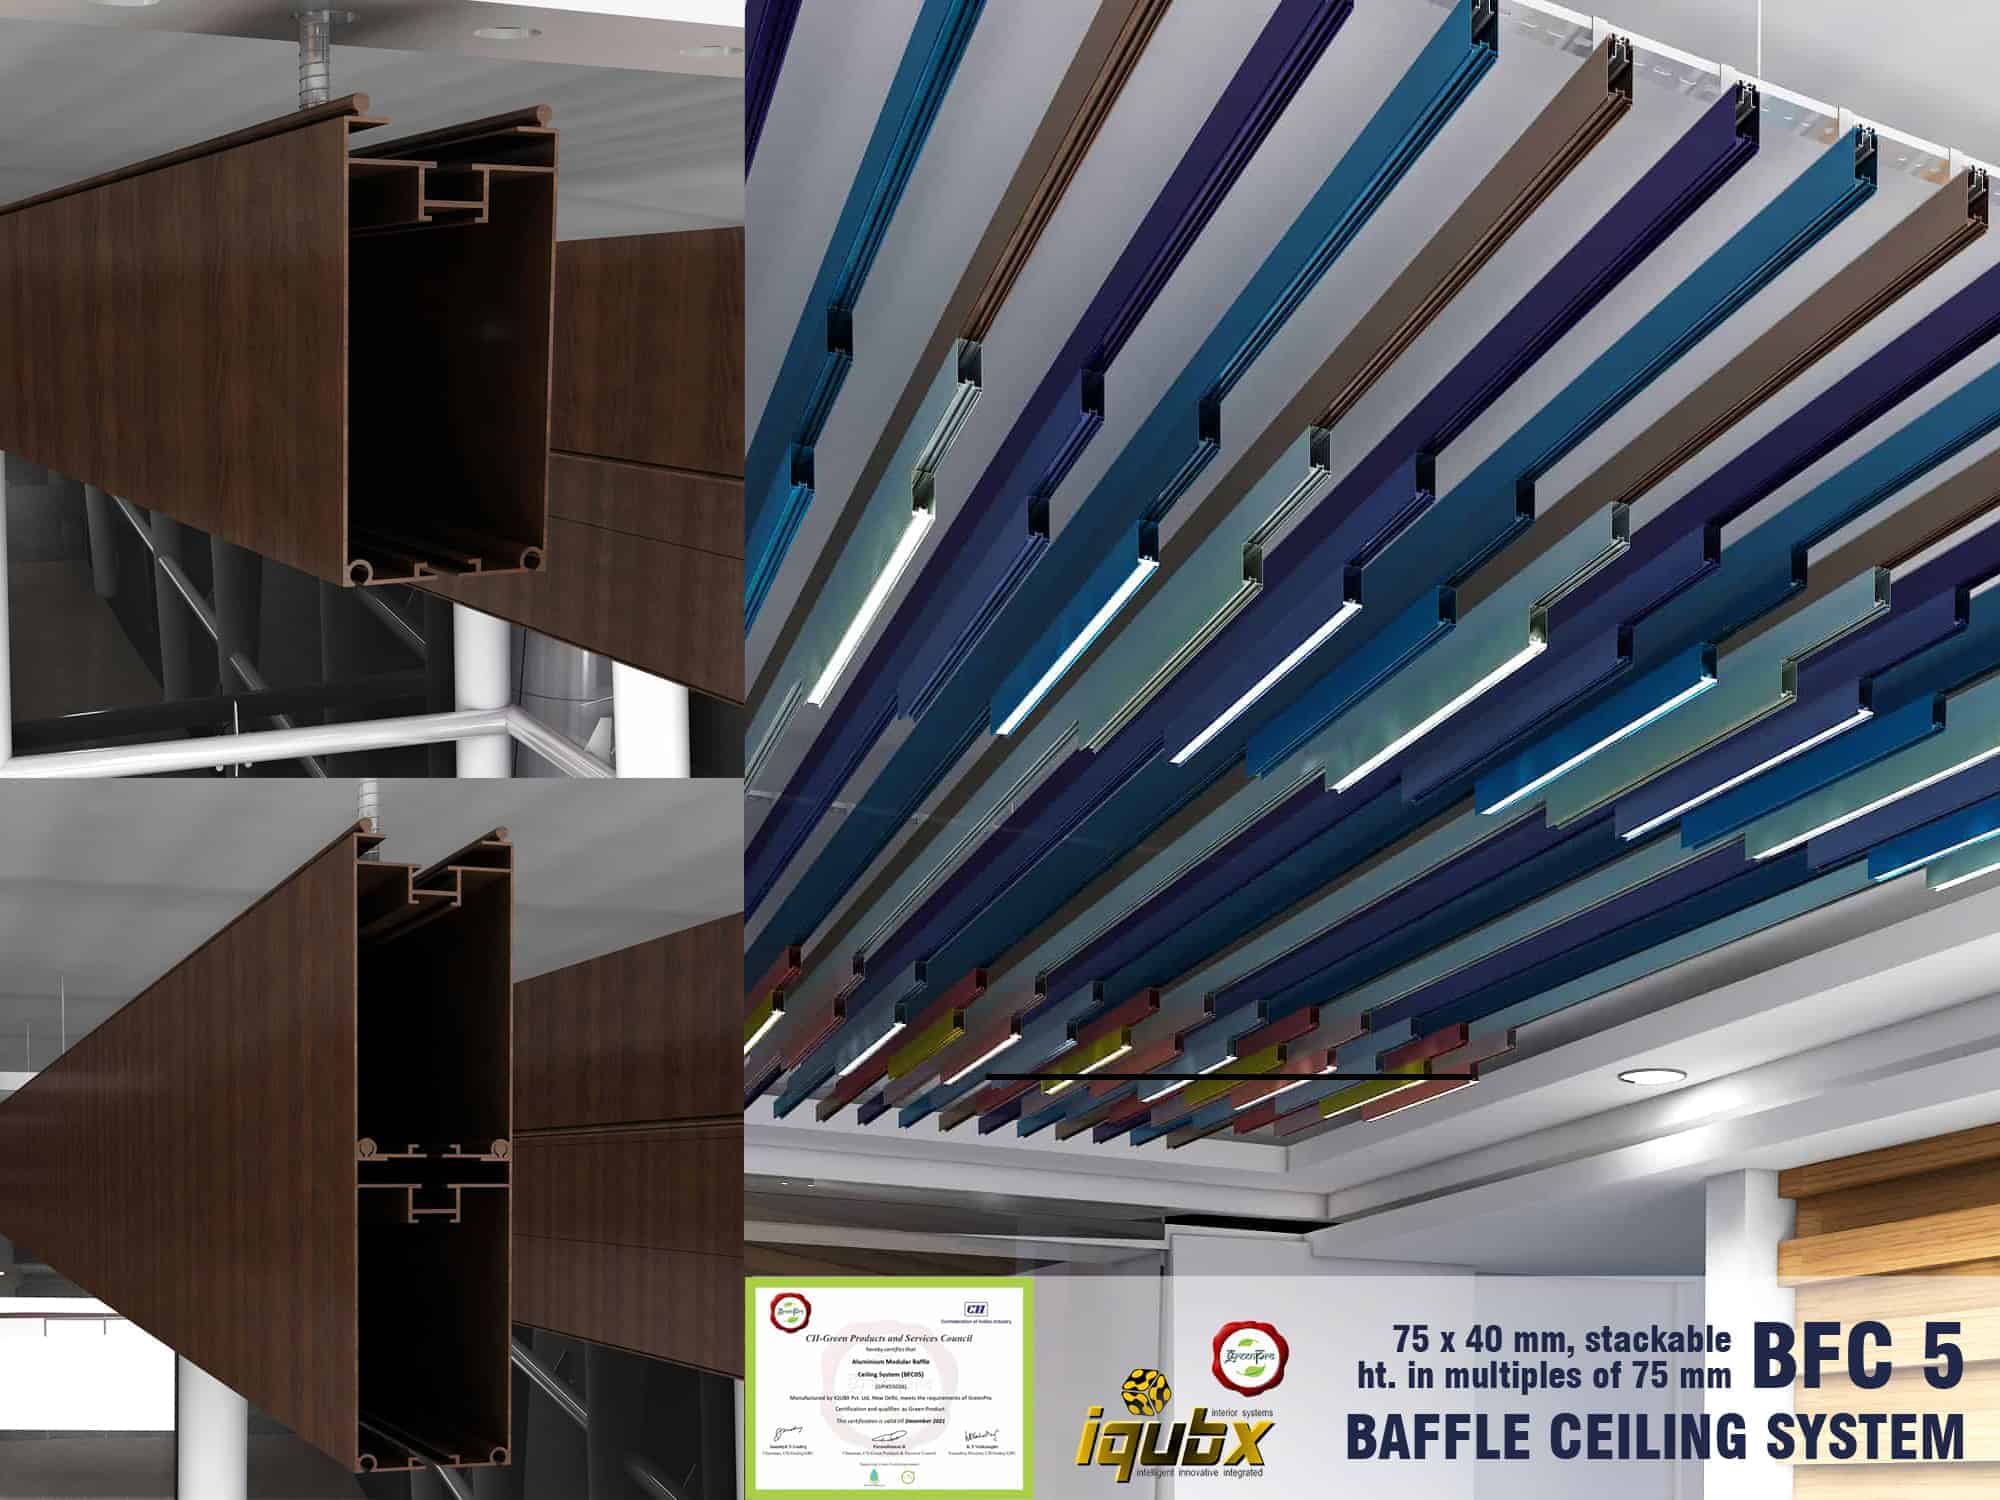 iqubx baffle ceiling bfc5